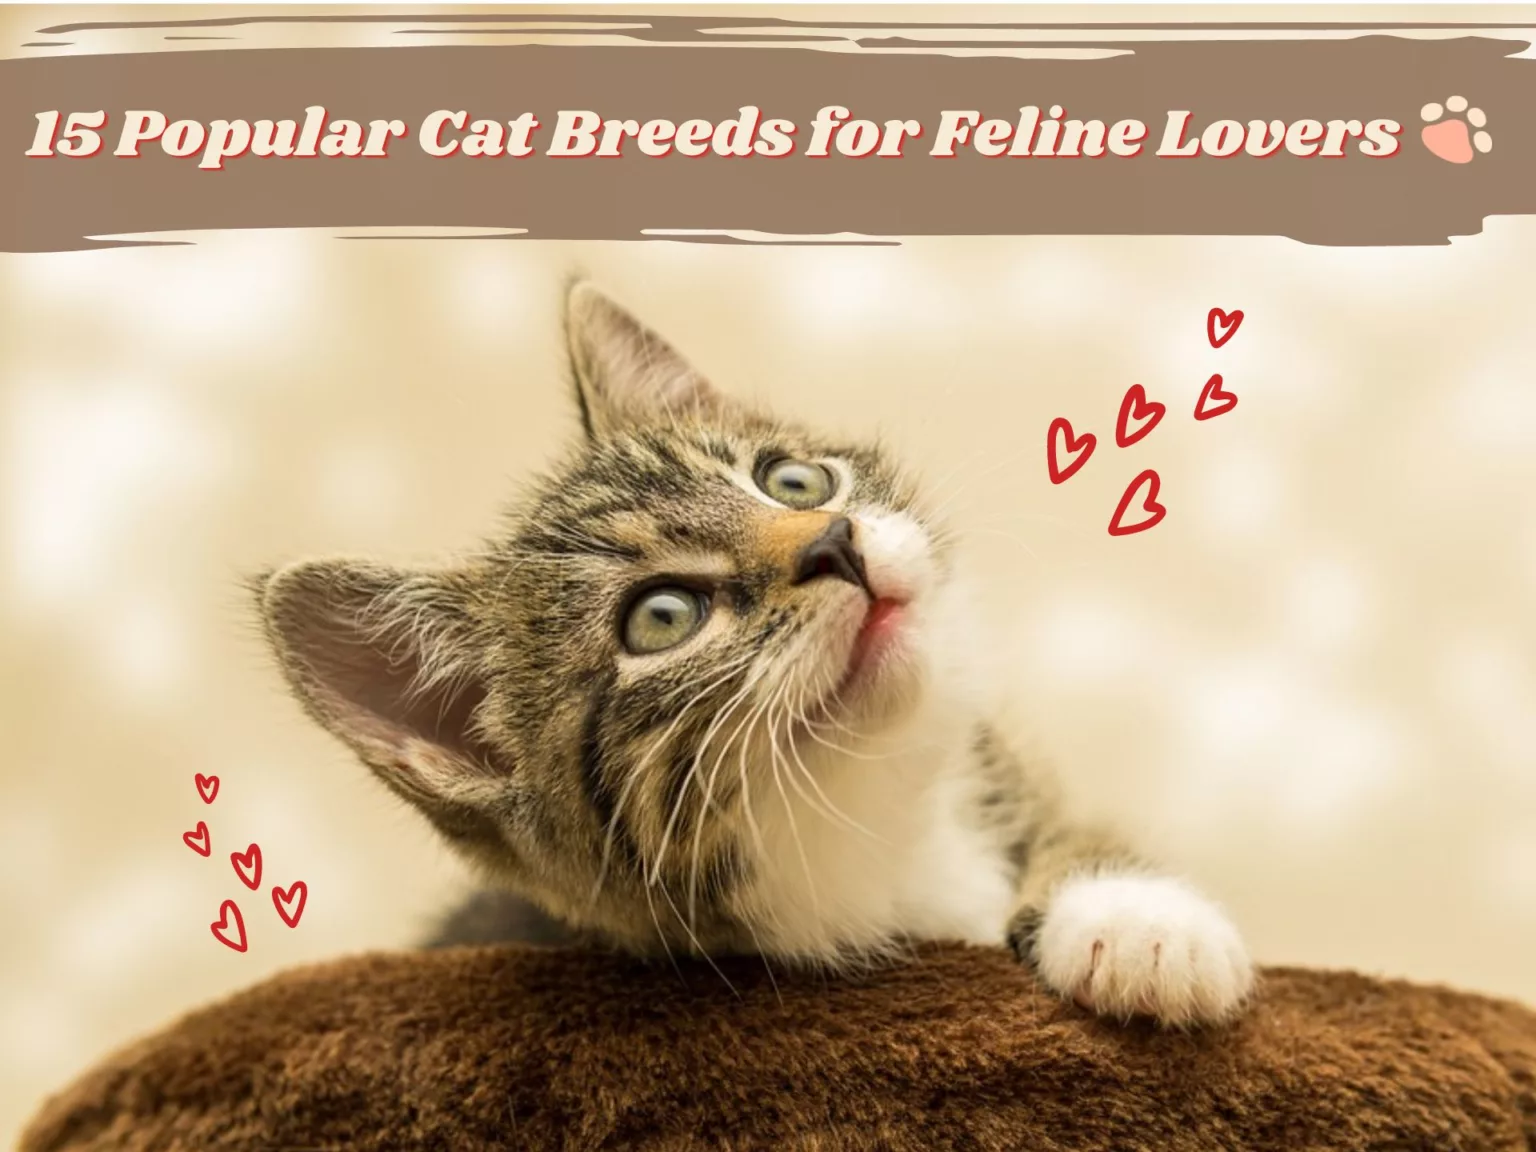 15 Popular Cat Breeds for Feline Lovers